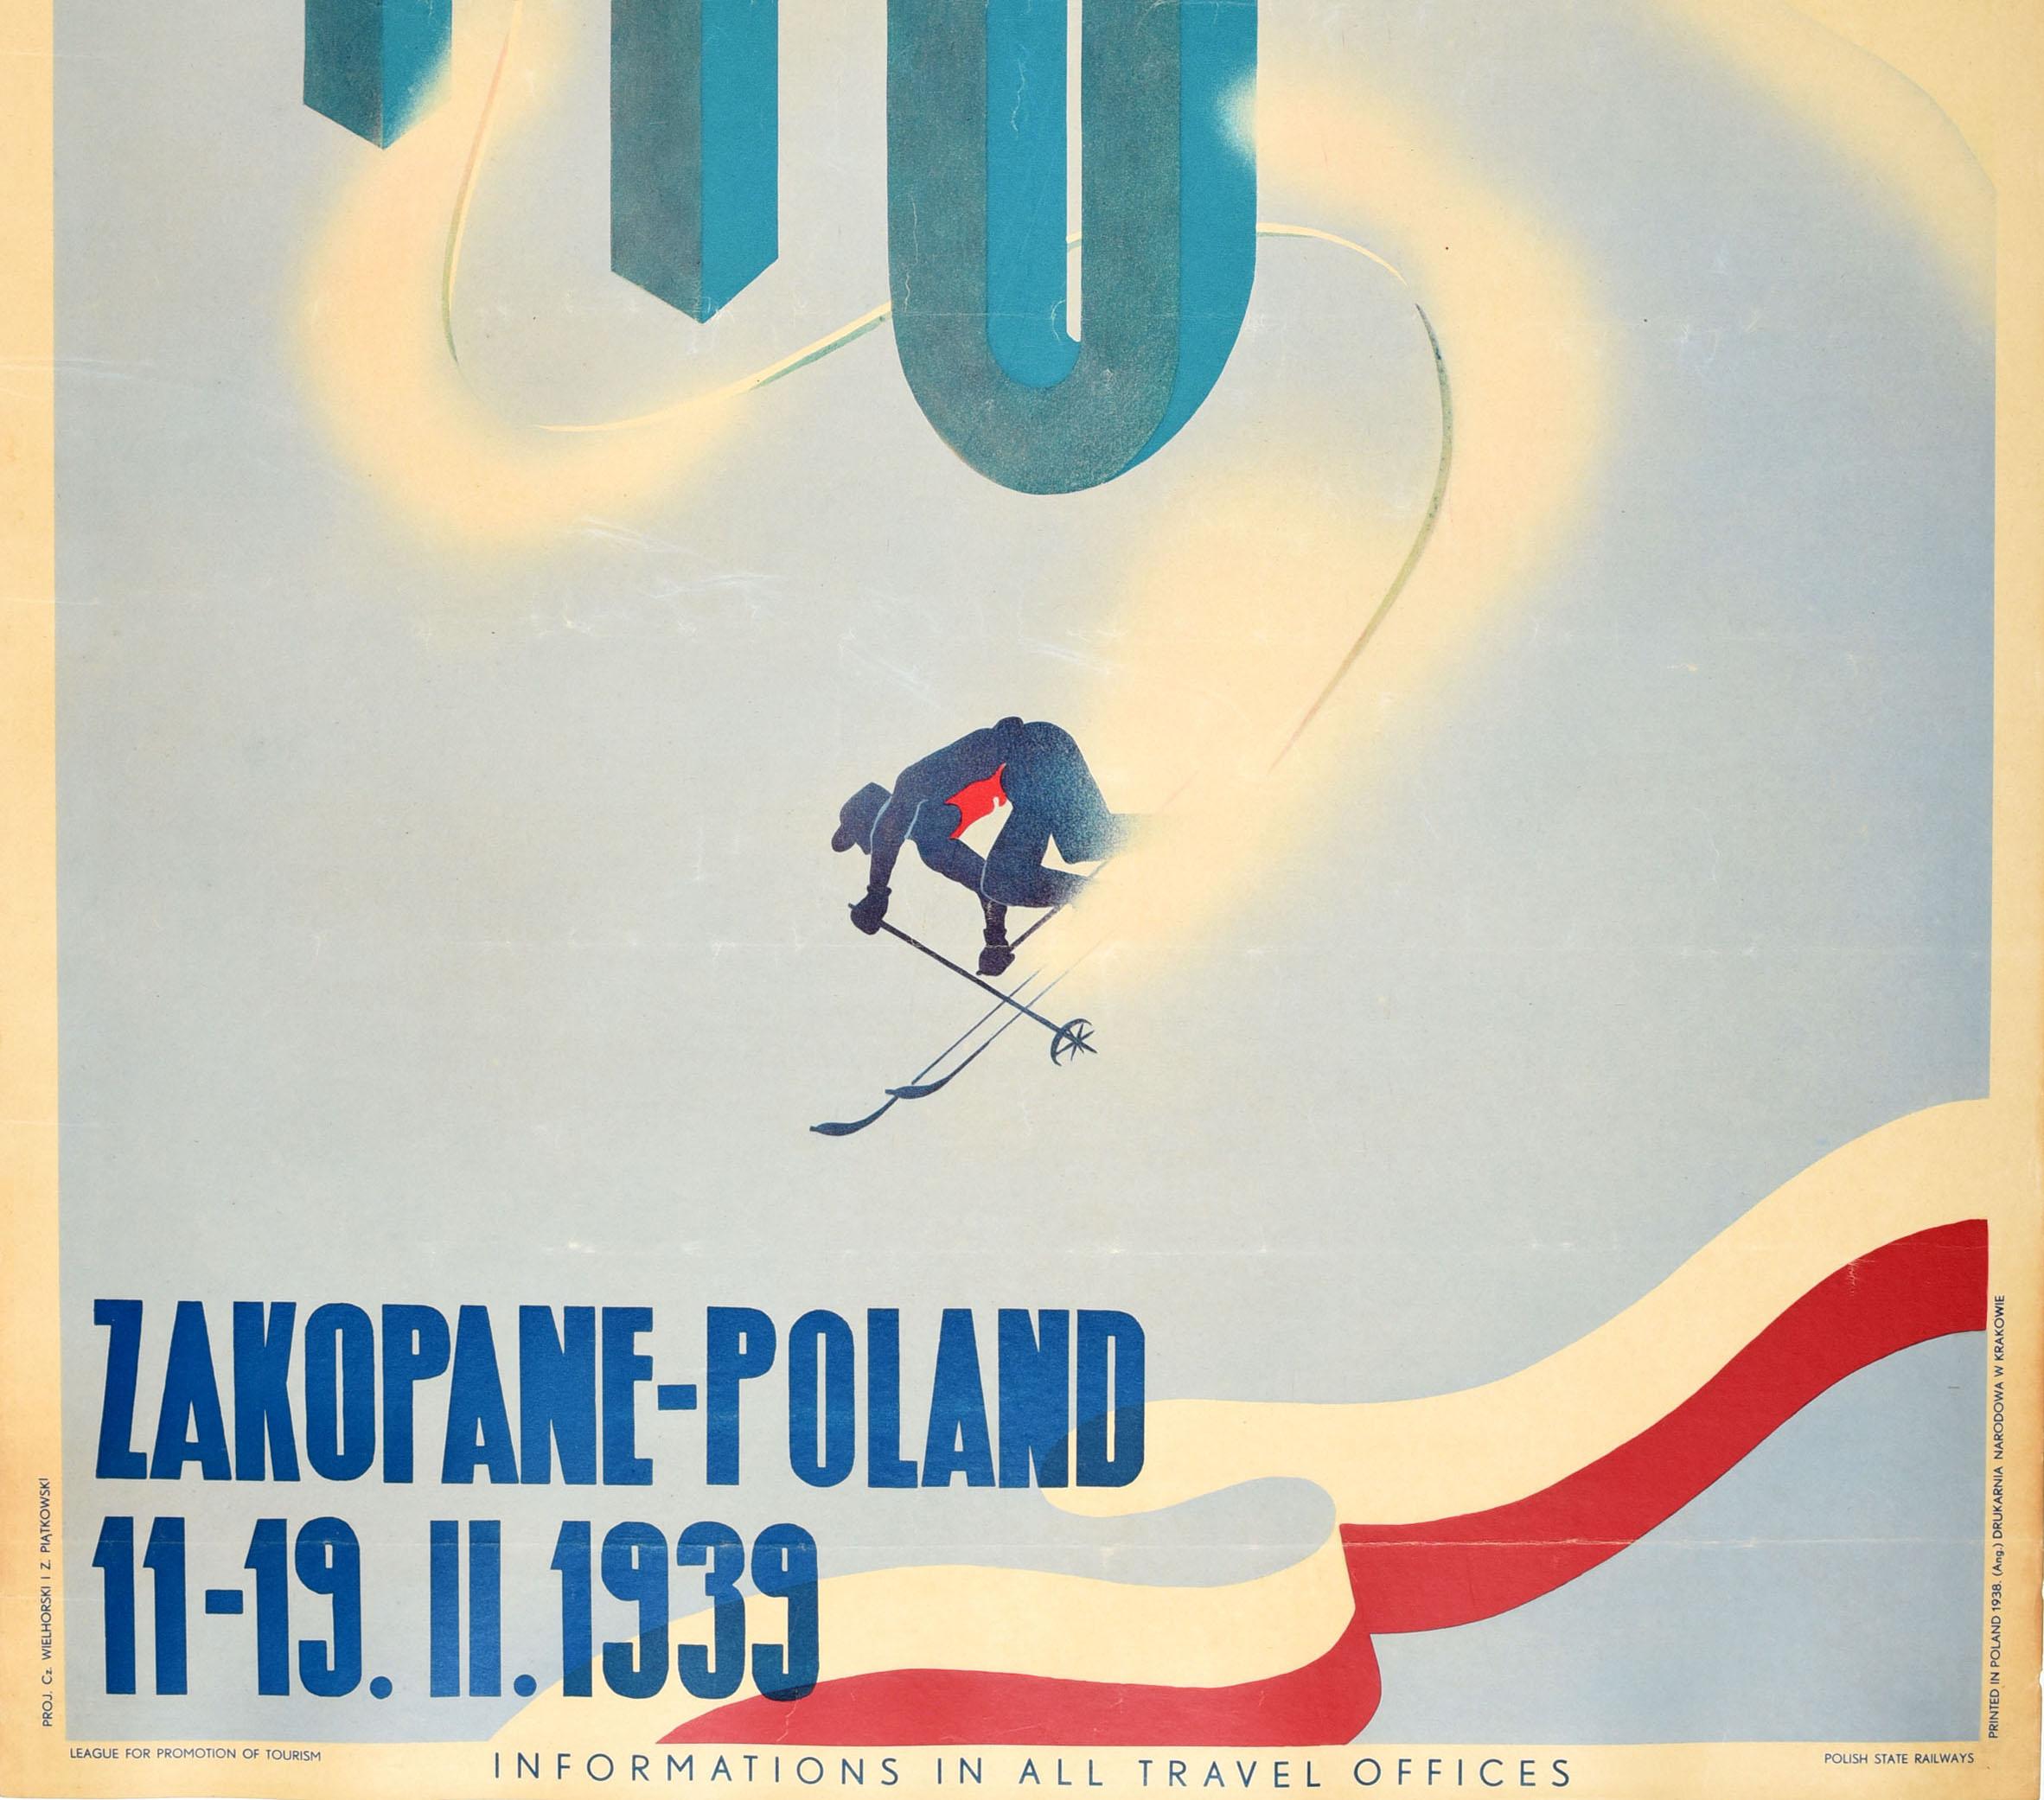 Original-Ski-Reiseplakat für die FIS-Ski-Weltmeisterschaften in Zakopane Polen vom 11. bis 19. Februar 1939. Dynamisches Design, das einen Skifahrer zeigt, der in einem Slalomrennen um die Buchstaben FIS herumfährt. Im Hintergrund sind eine